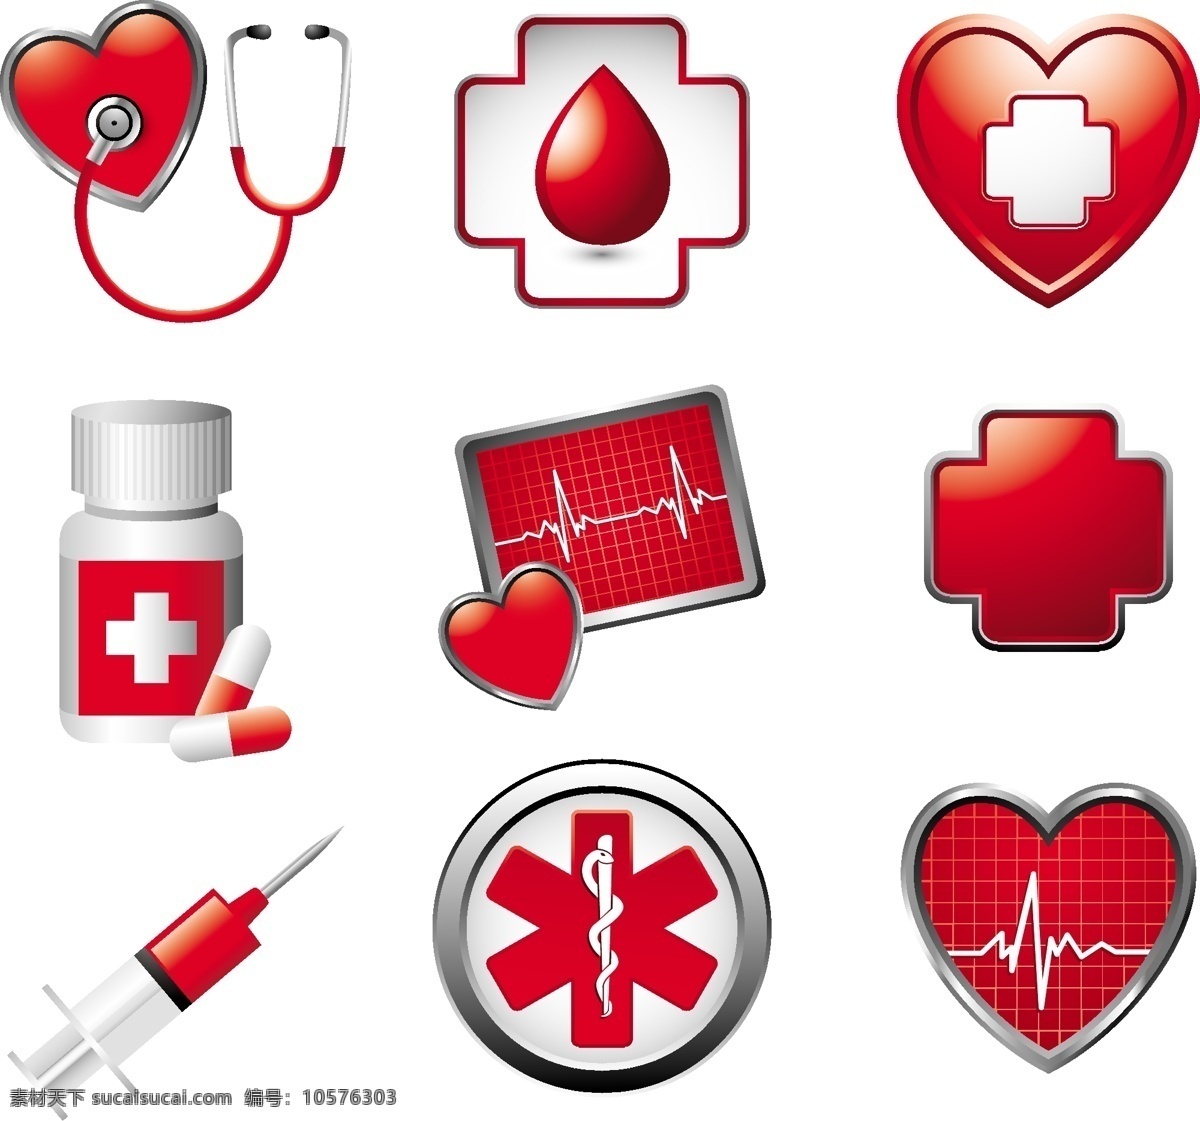 心脏 救助 图标 矢量 心脏救助图标 矢量素材 医疗用品 药箱 心电图 医疗救助图标 白色